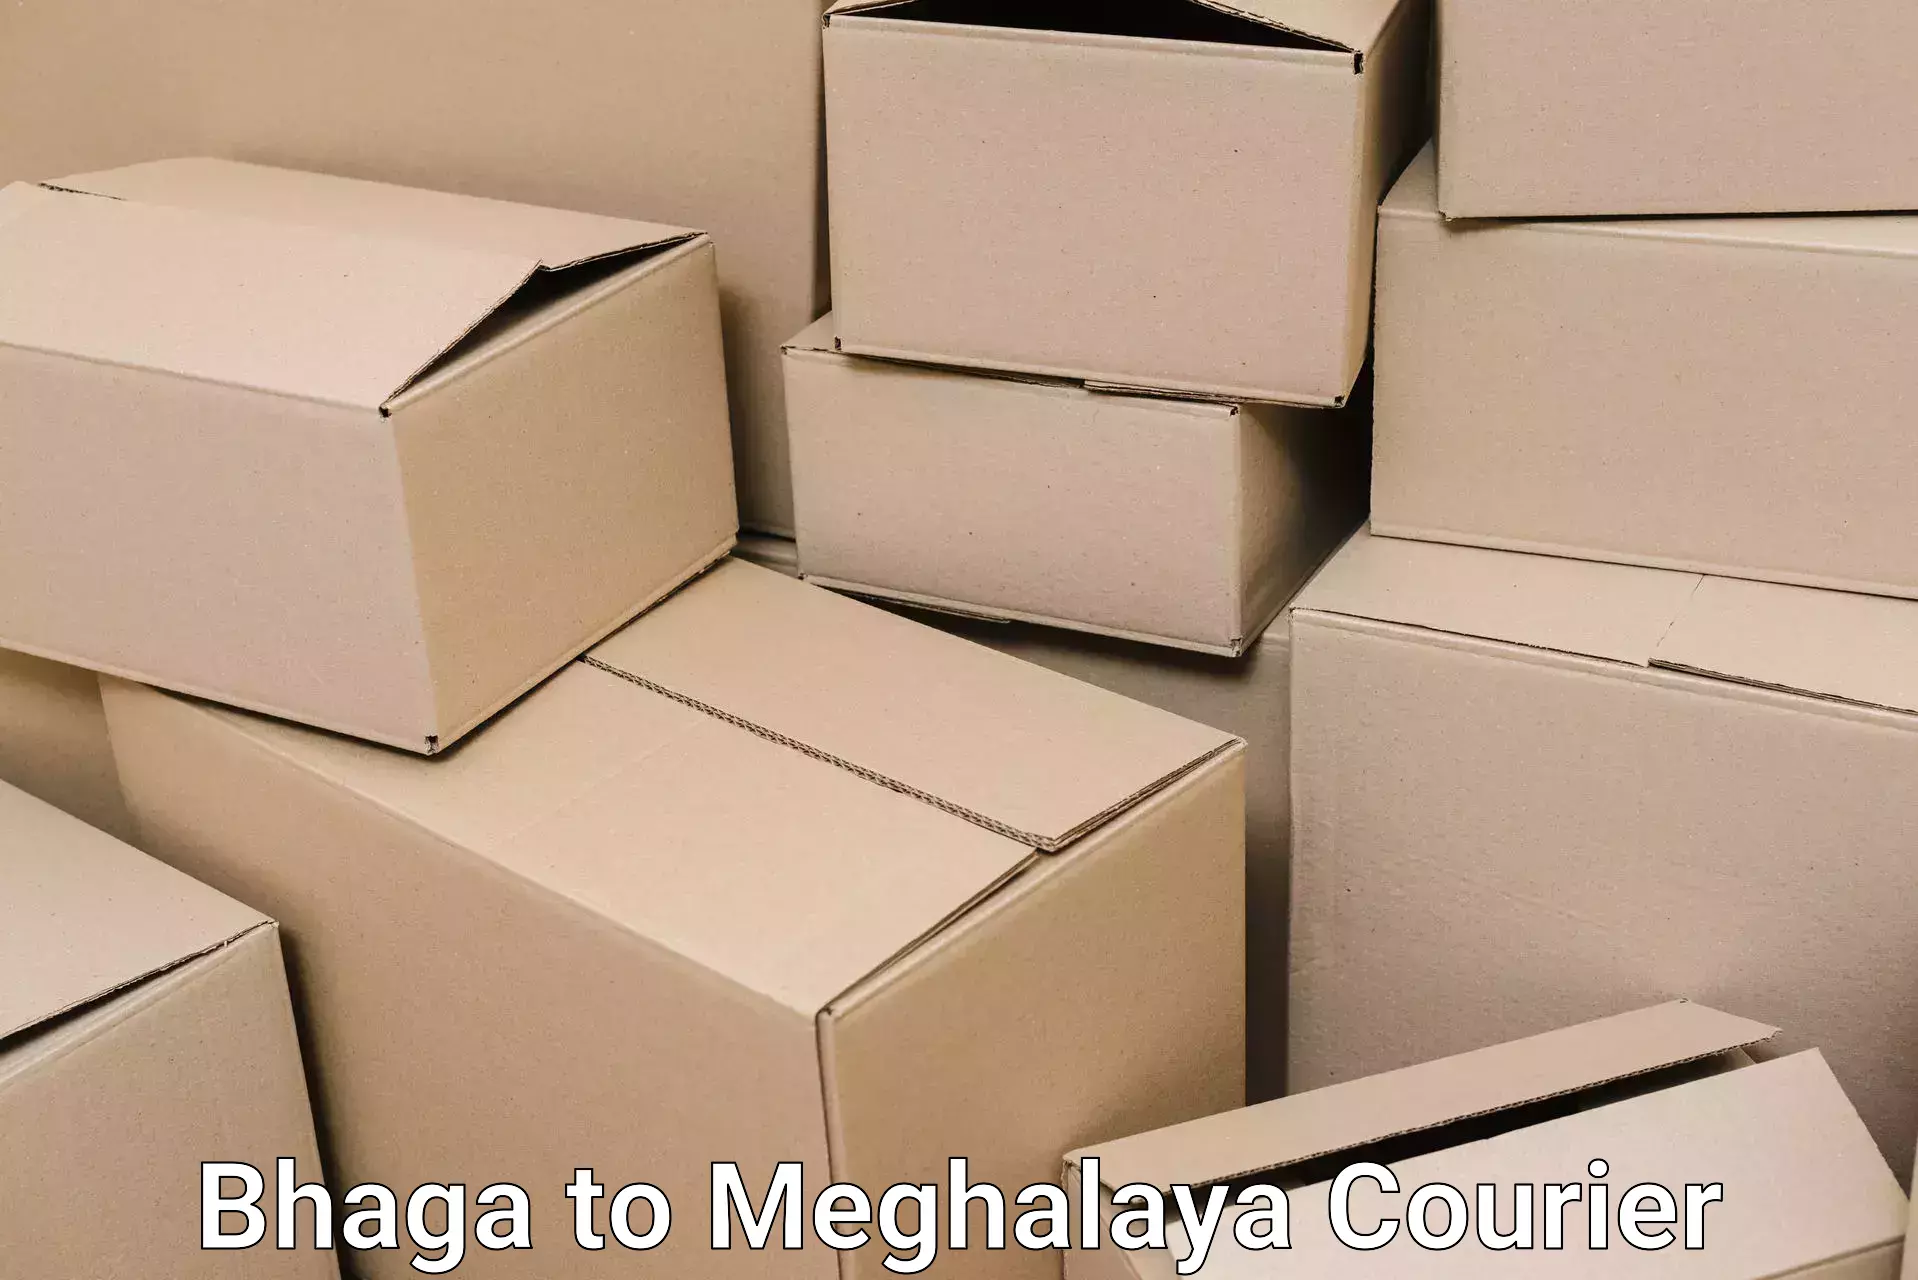 Furniture transport experts Bhaga to Meghalaya